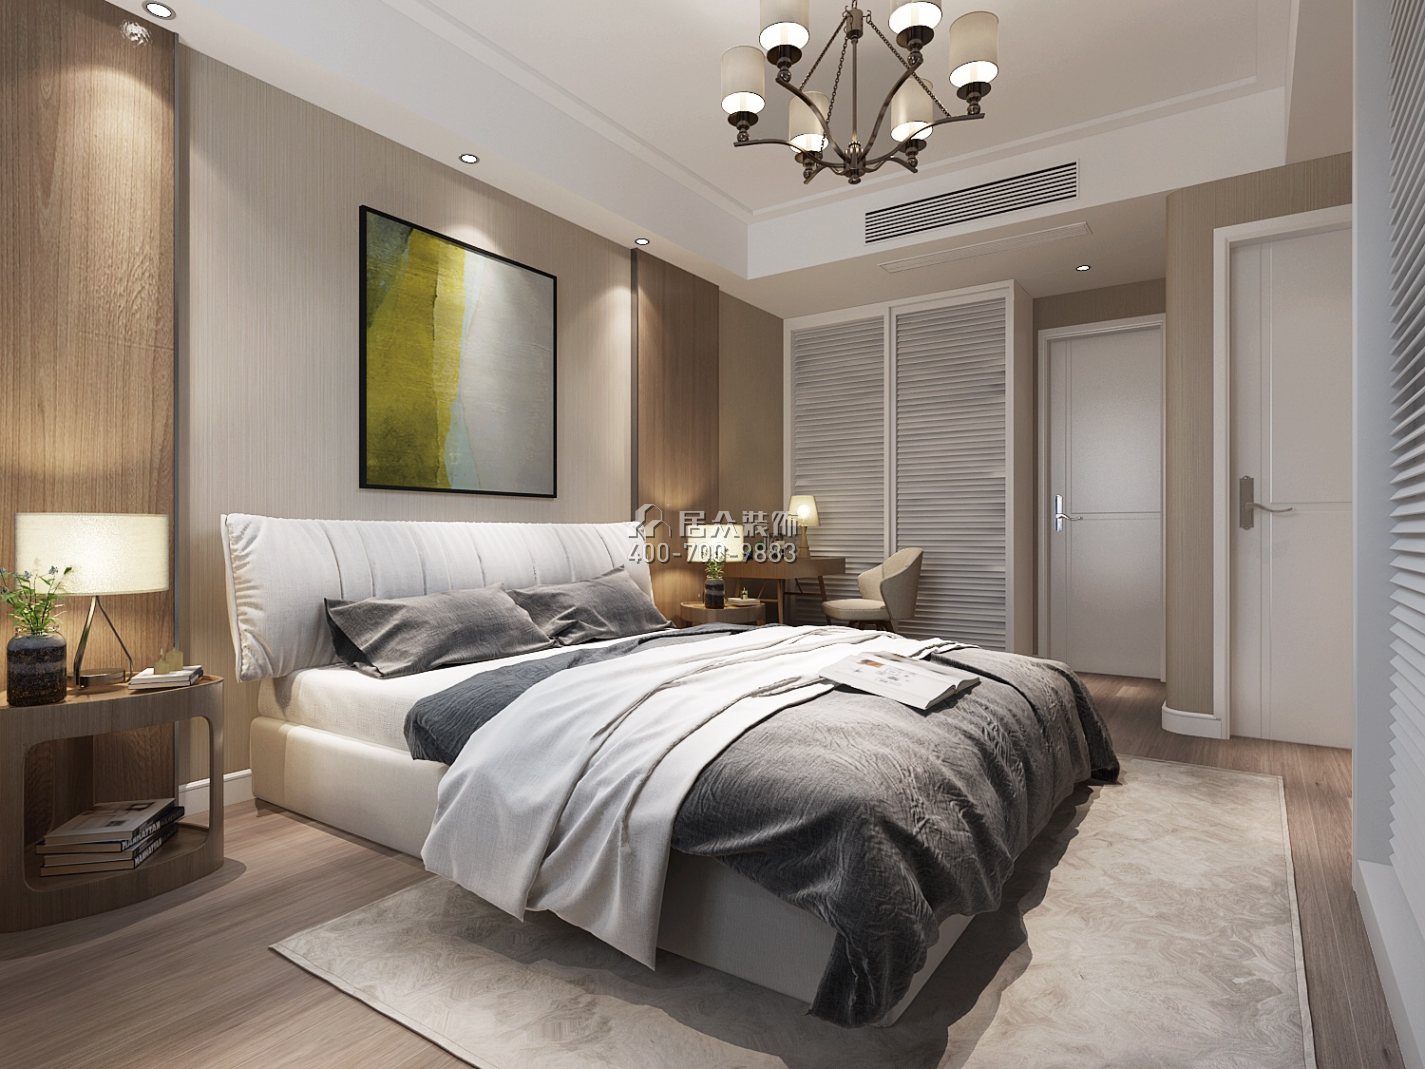 紫御华庭130平方米现代简约风格平层户型卧室装修效果图